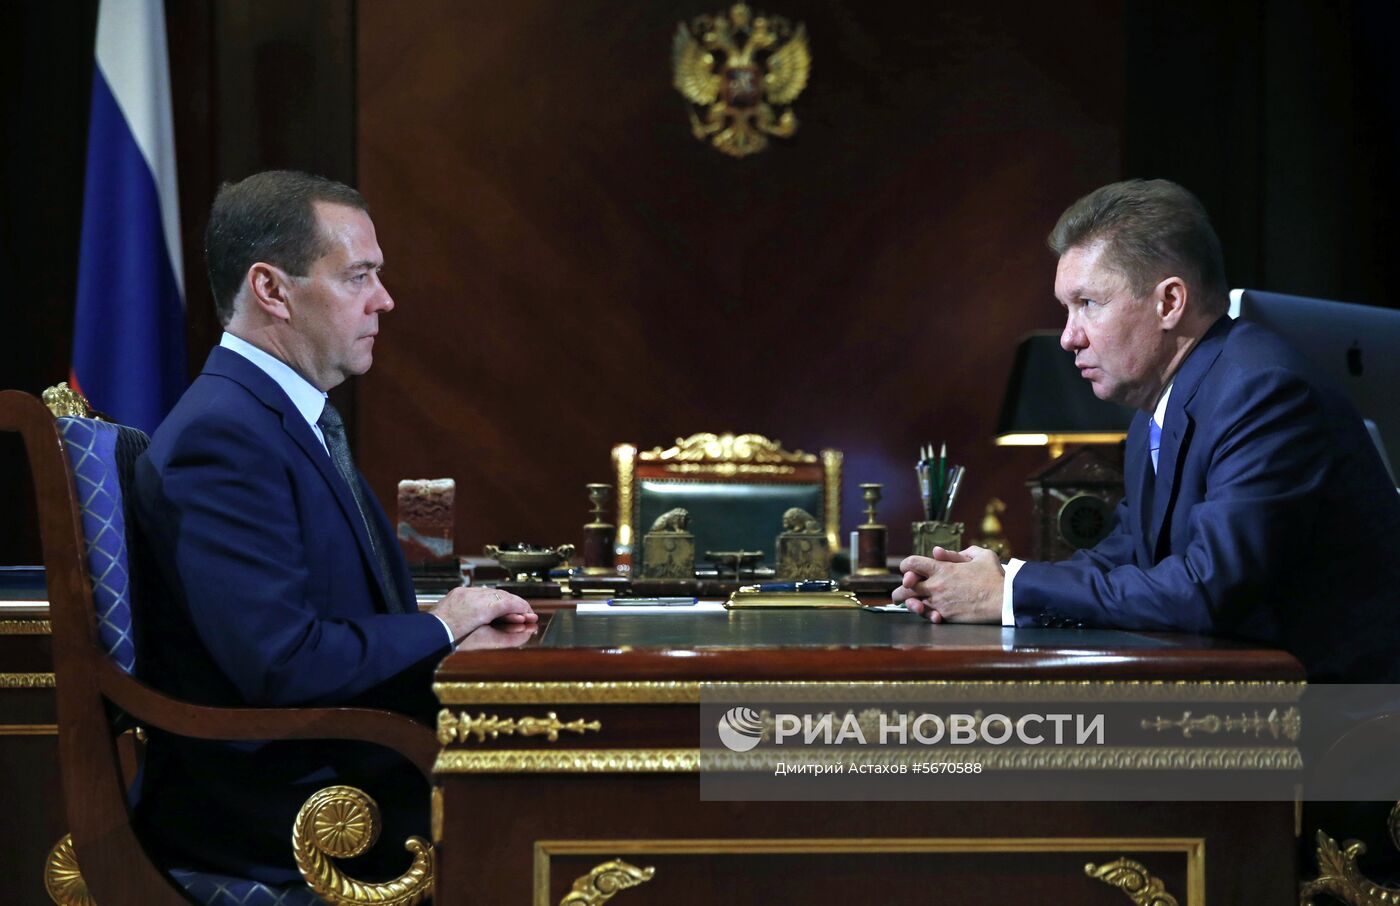 Премьер-министр РФ Д. Медведев встретился с председателем правления ПАО "Газпром" А. Миллером